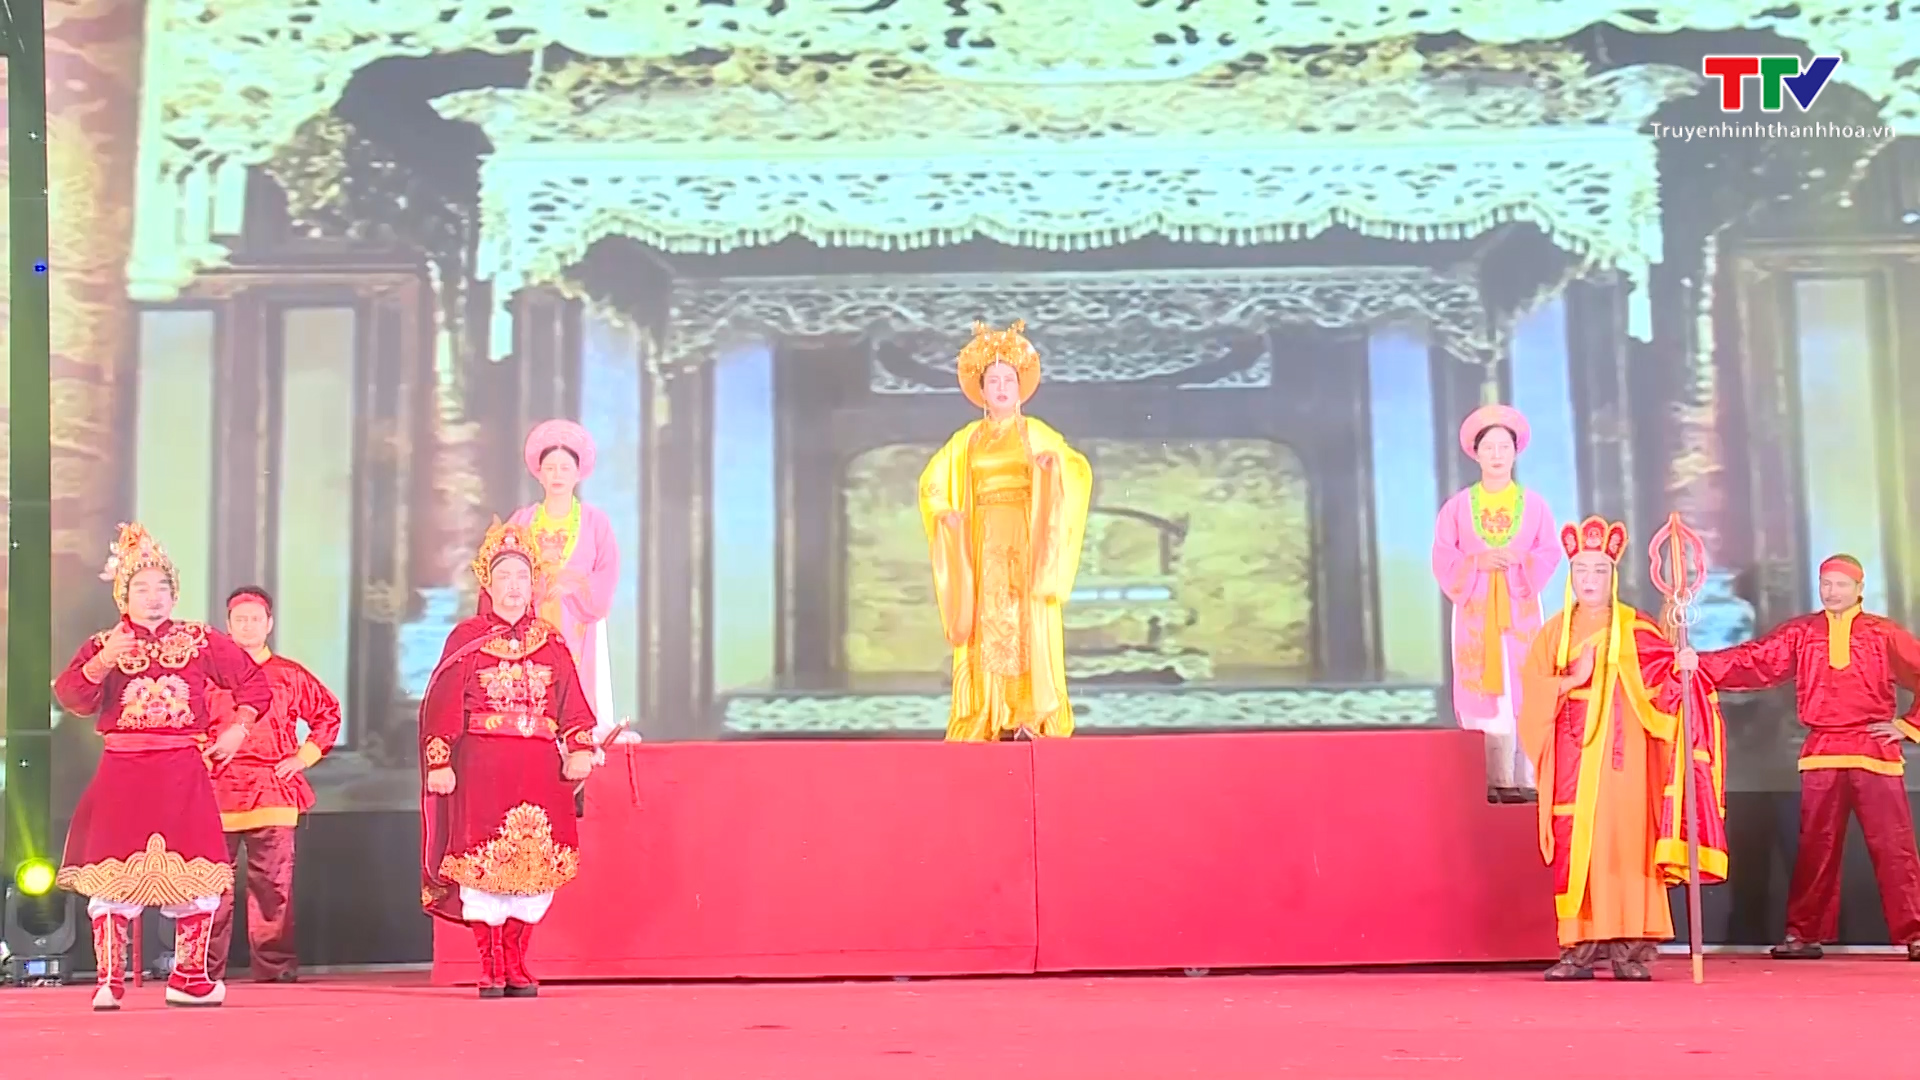 Tổng duyệt chương trình Lễ hội Đền thờ Lê Hoàn năm 2023, kỷ niệm 1018 năm ngày mất của Lê Đại Hành hoàng đế và đón nhận Di sản văn hóa phi vật thể quốc gia - Ảnh 3.